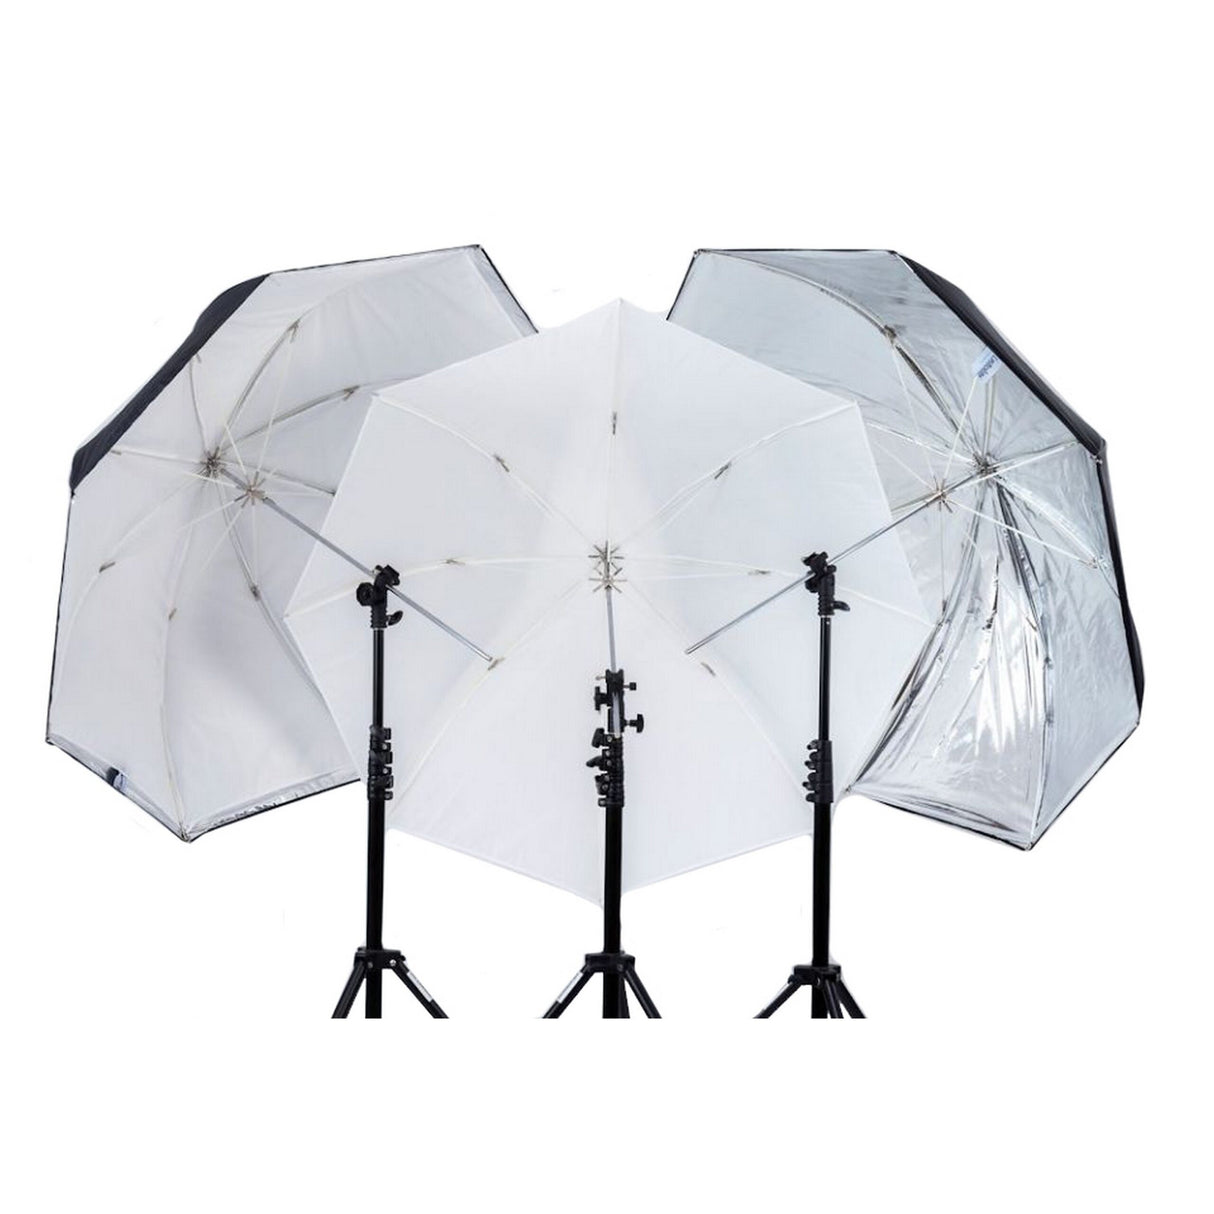 Lastolite LL LU3237F All-In-One Umbrella, Silver/White